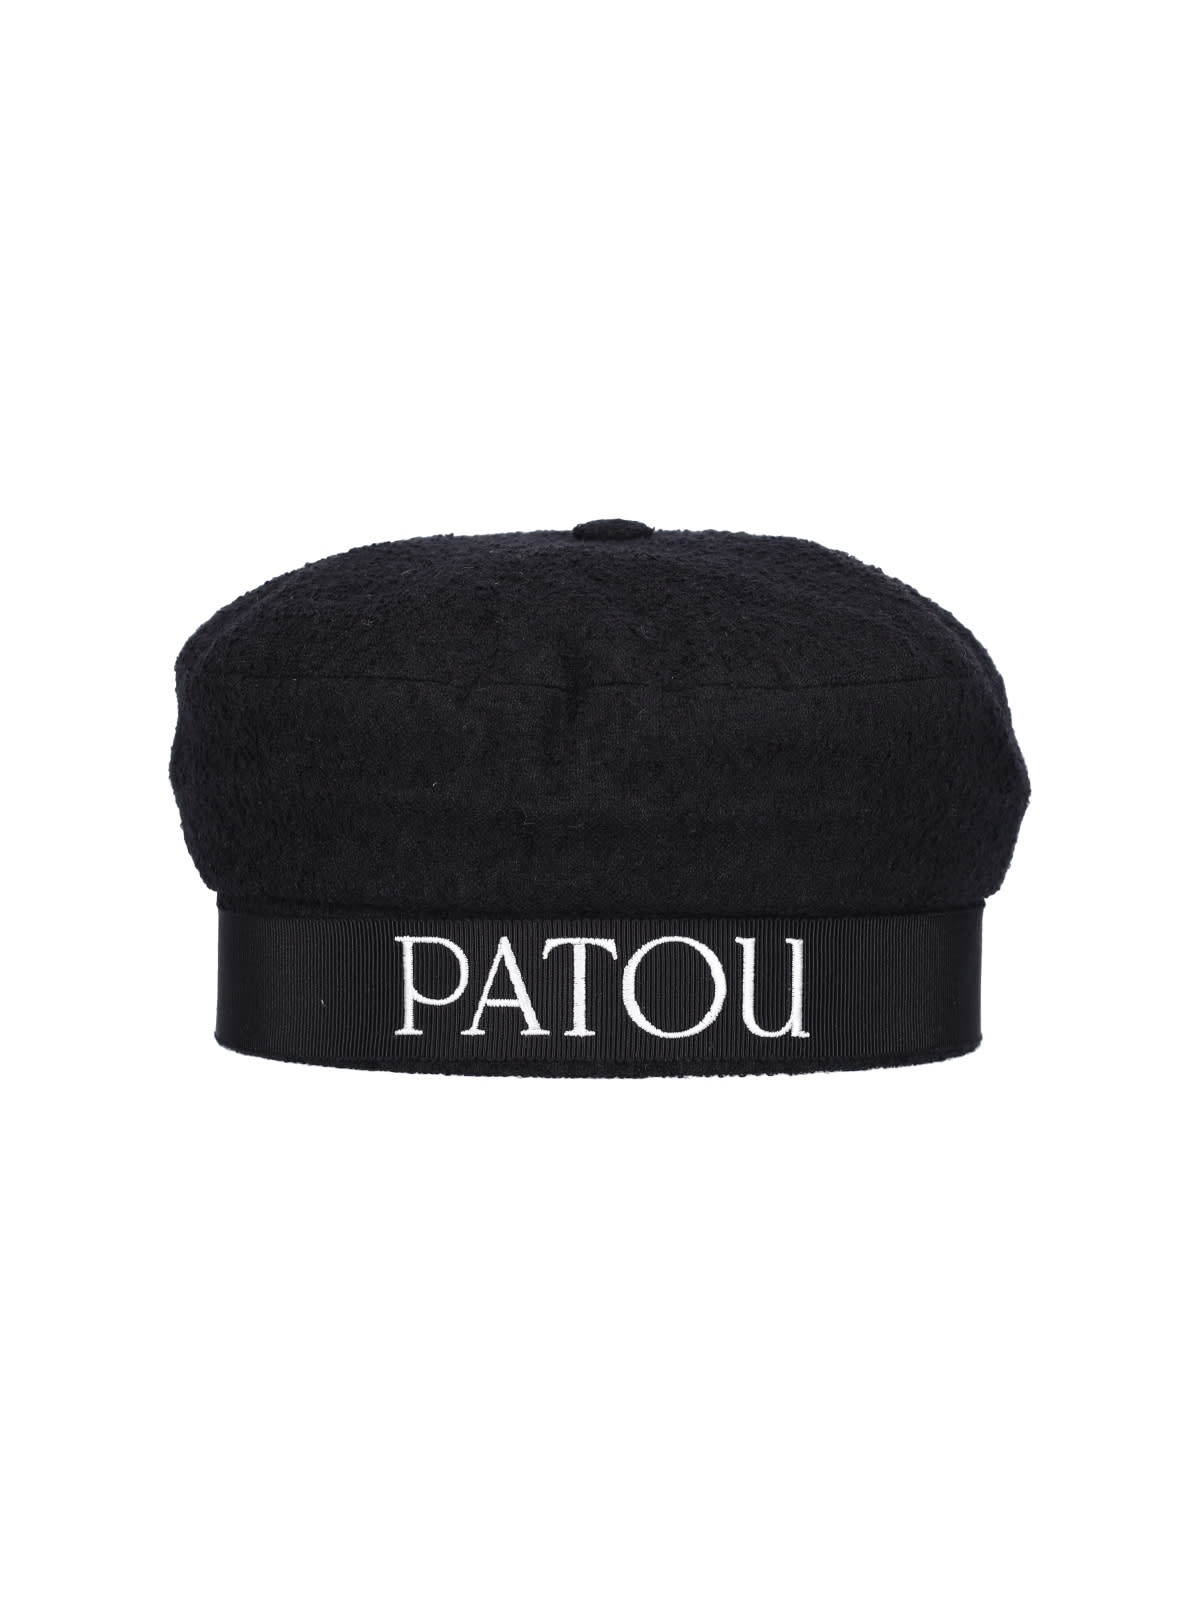 PATOU HAT